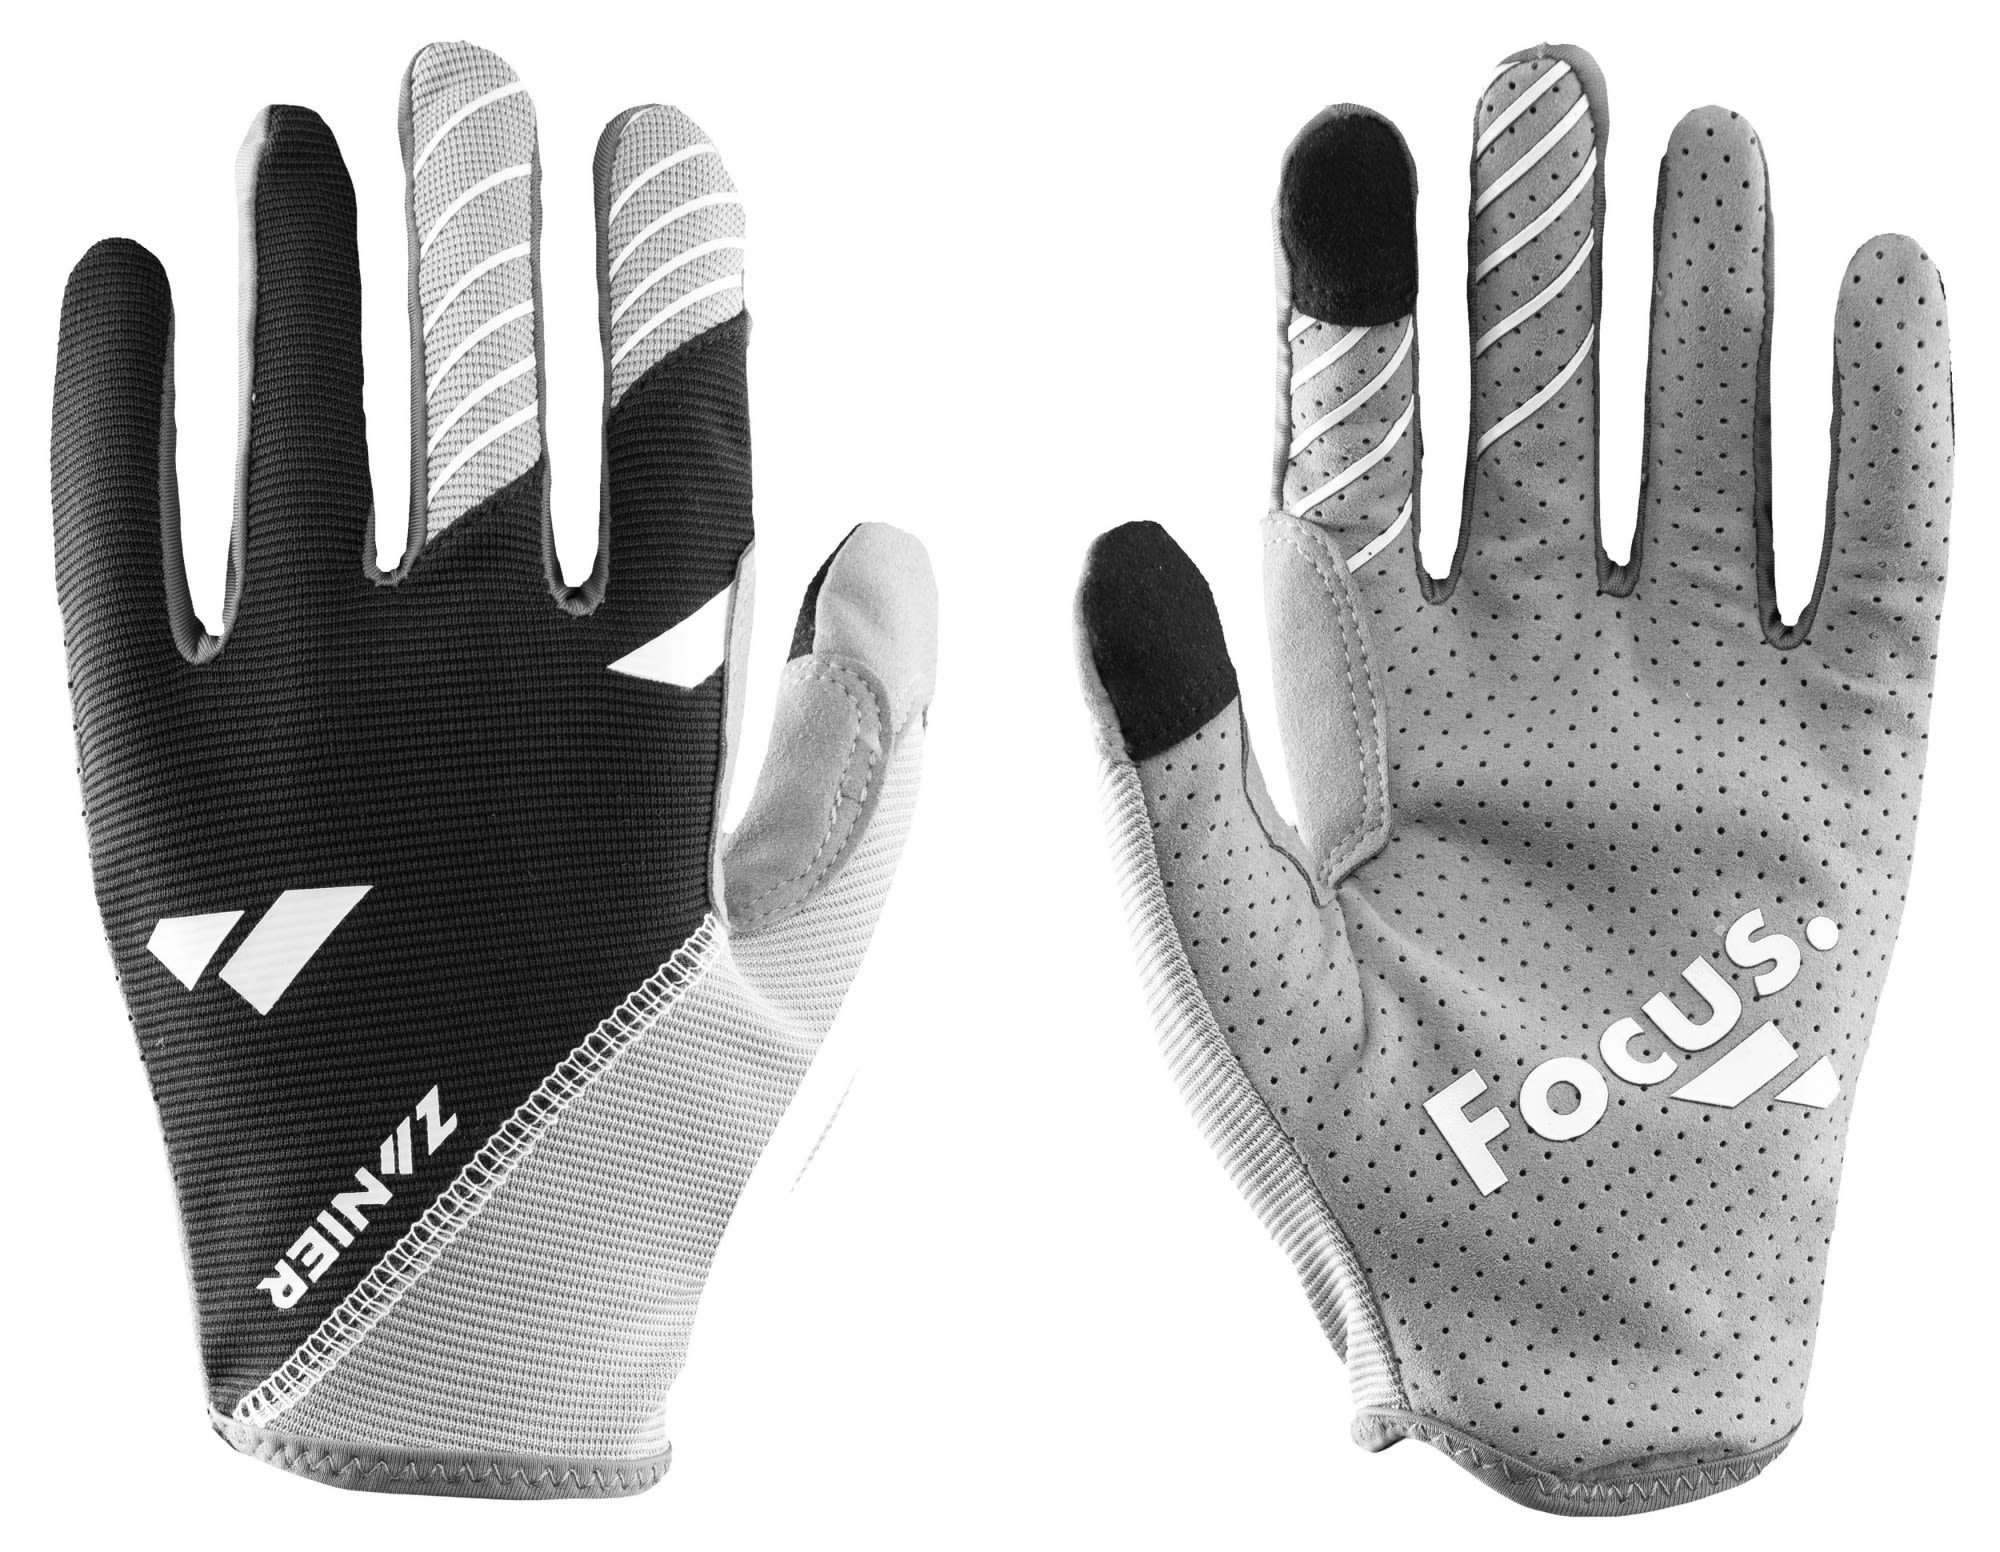 Zanier Multisporthandschuhe SHREDDER Co2 neutral produziert, Griffige  lässige Touch Handschuhe